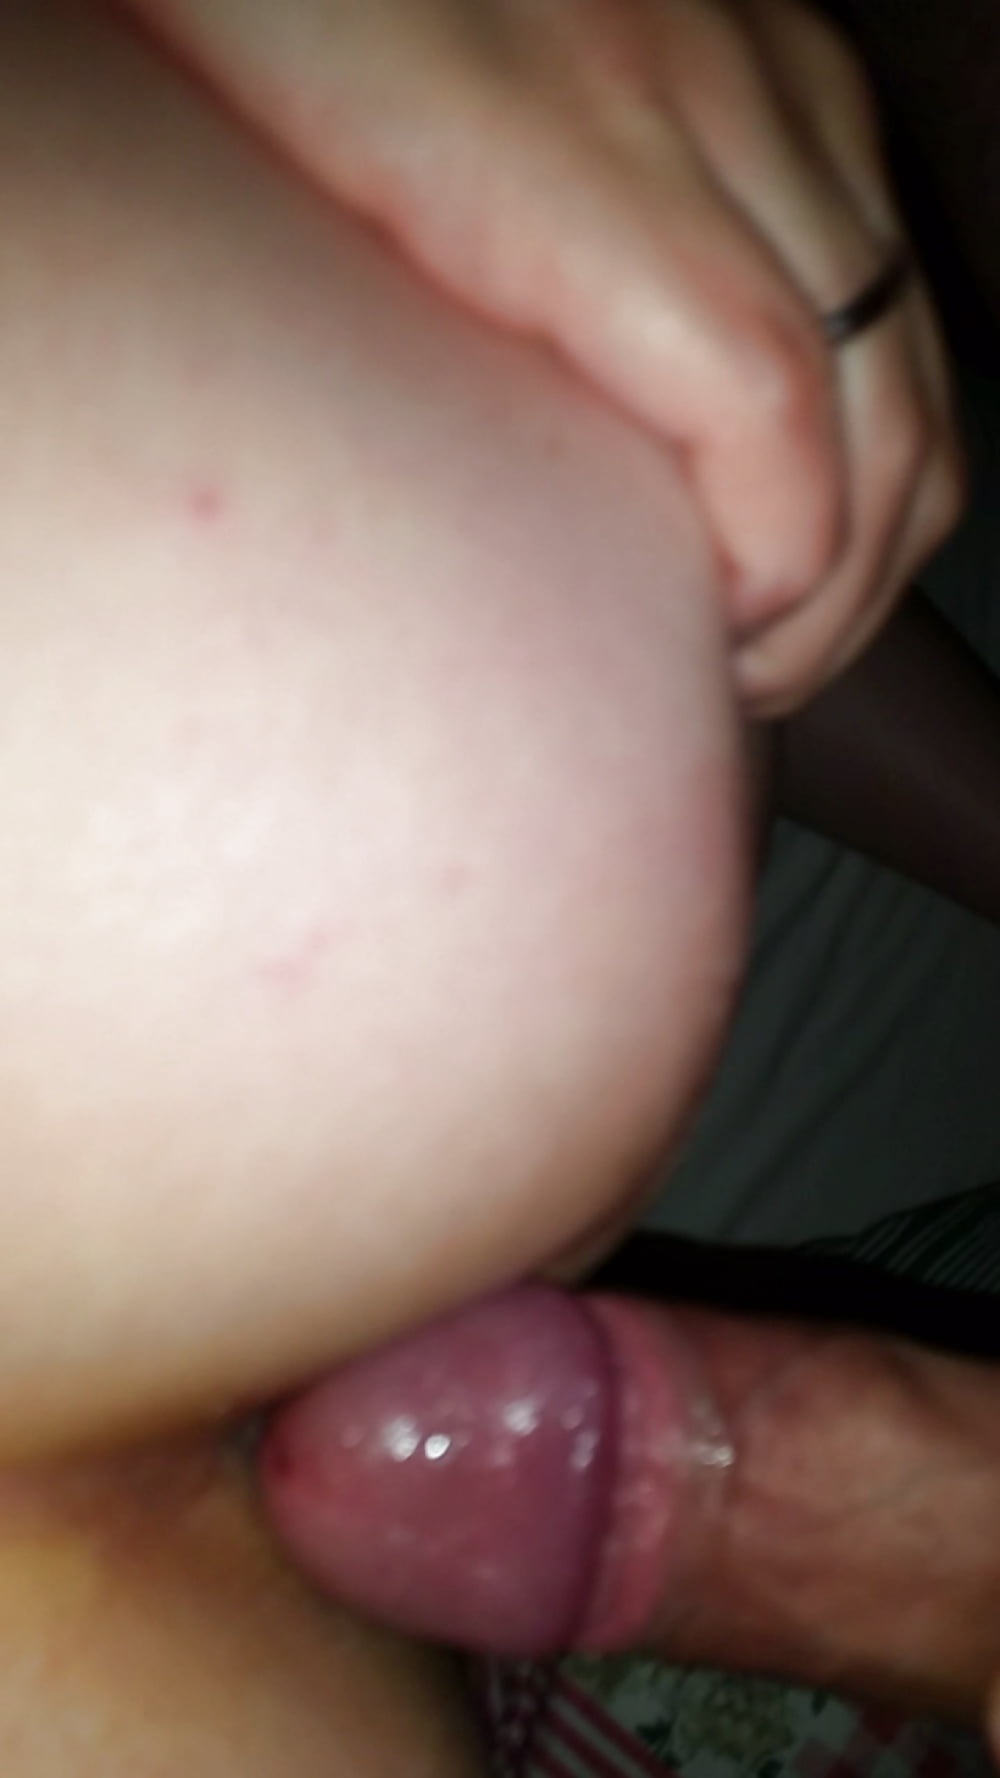 Bug butt girlfriend amateur sex Tattoo (21/21)